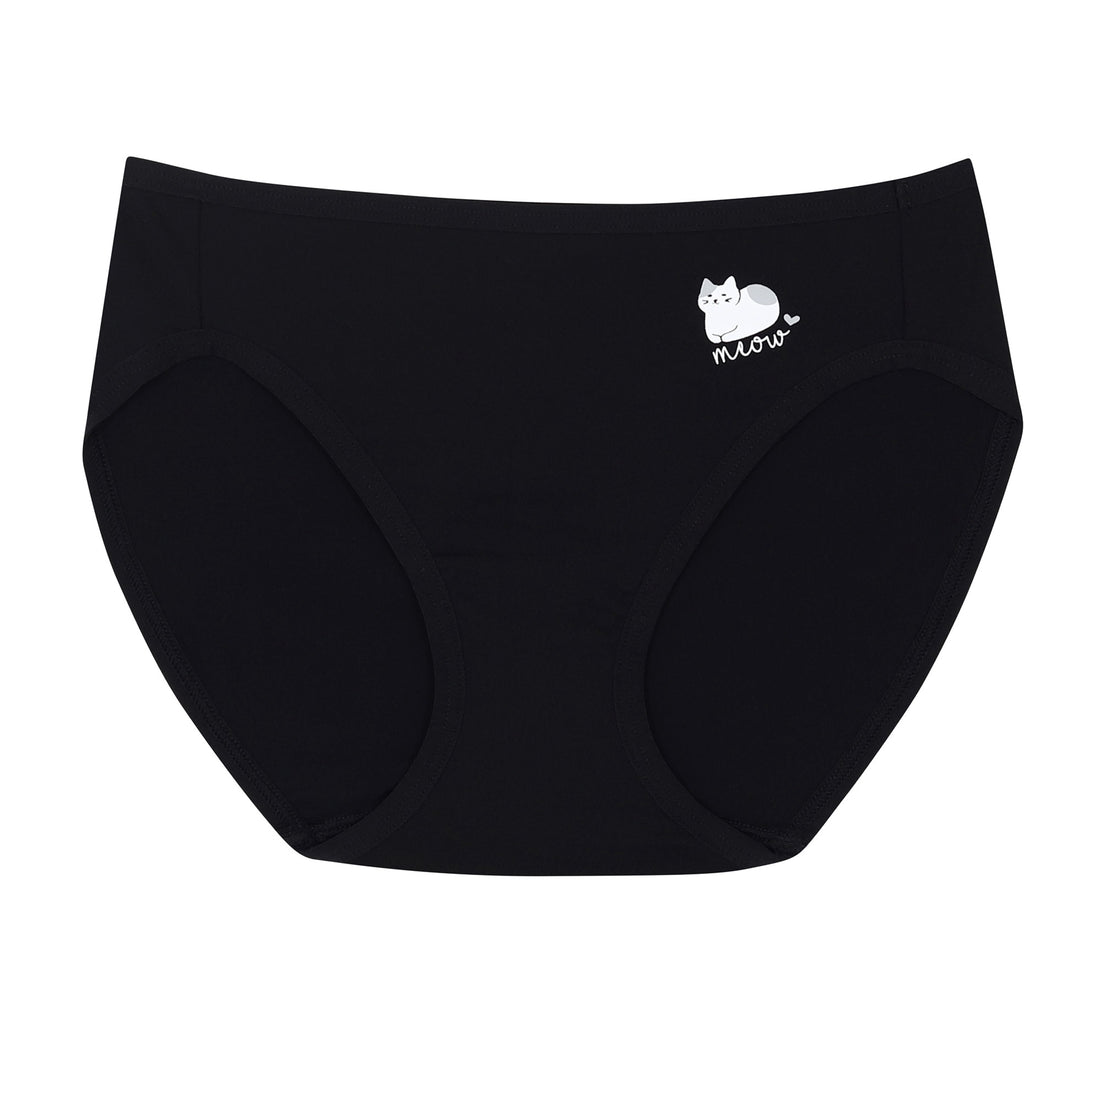 Wacoal Panty, bikini style underwear, model WU2C04, black (BL)